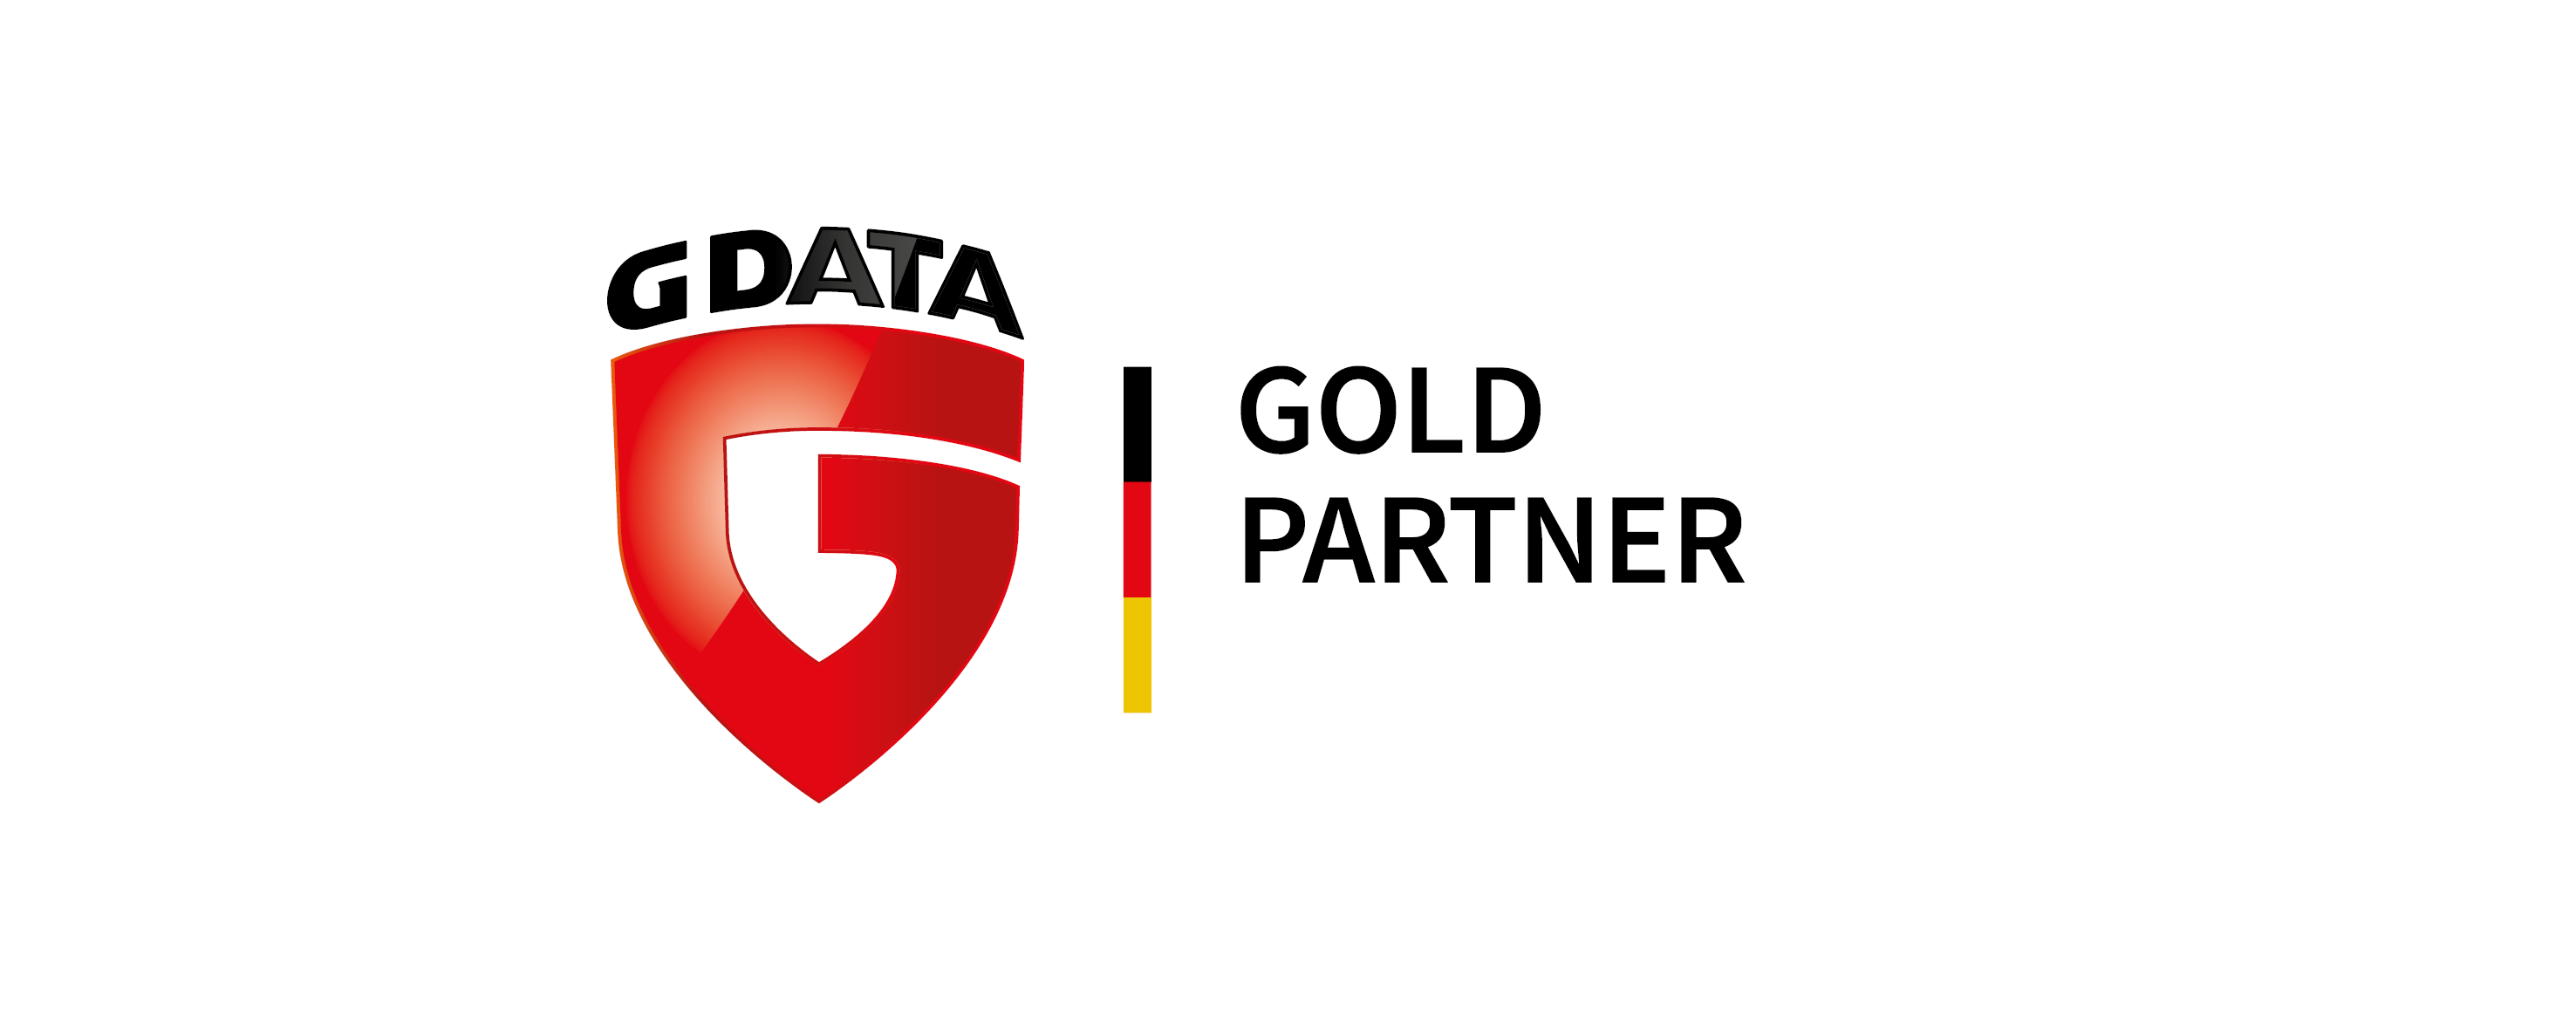 G DATA Gold Partner